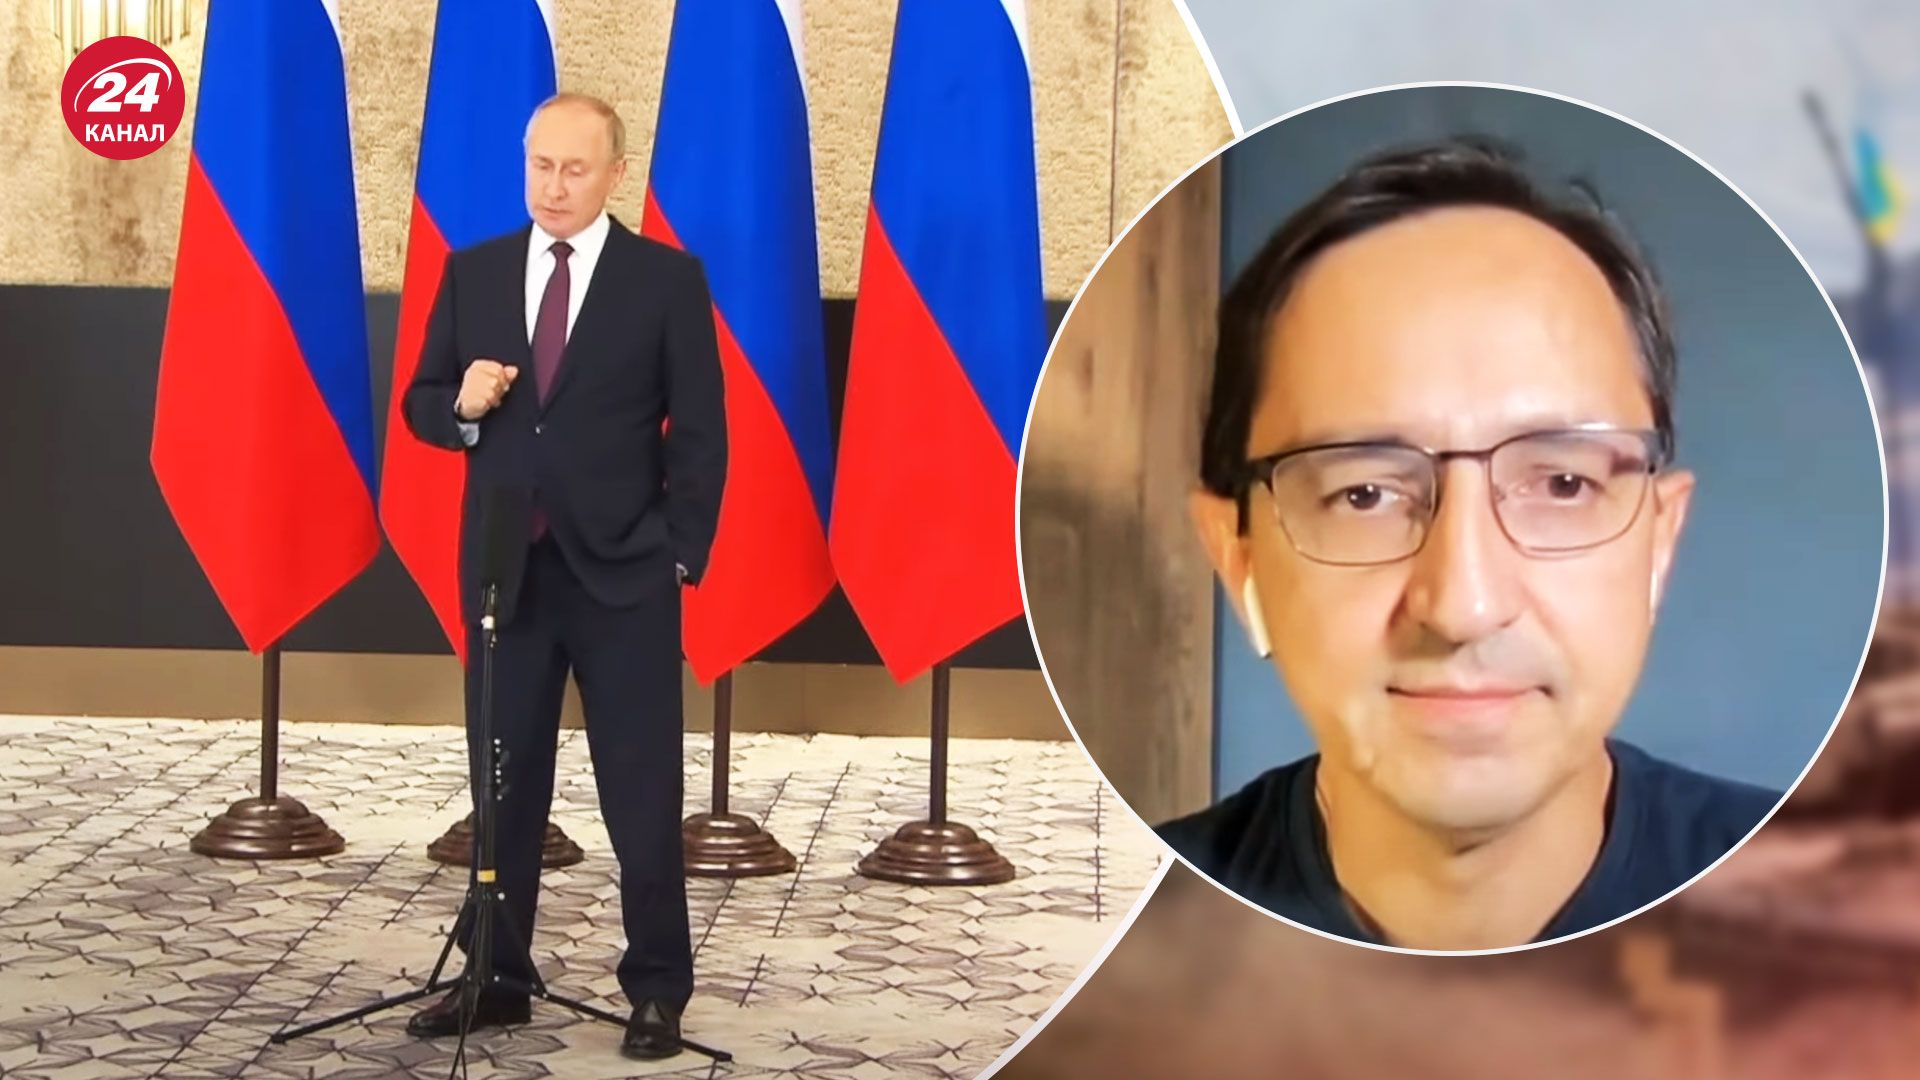 Ознака слабкості, – політичний експерт проаналізував виступ Путіна на ШОС - 24 Канал